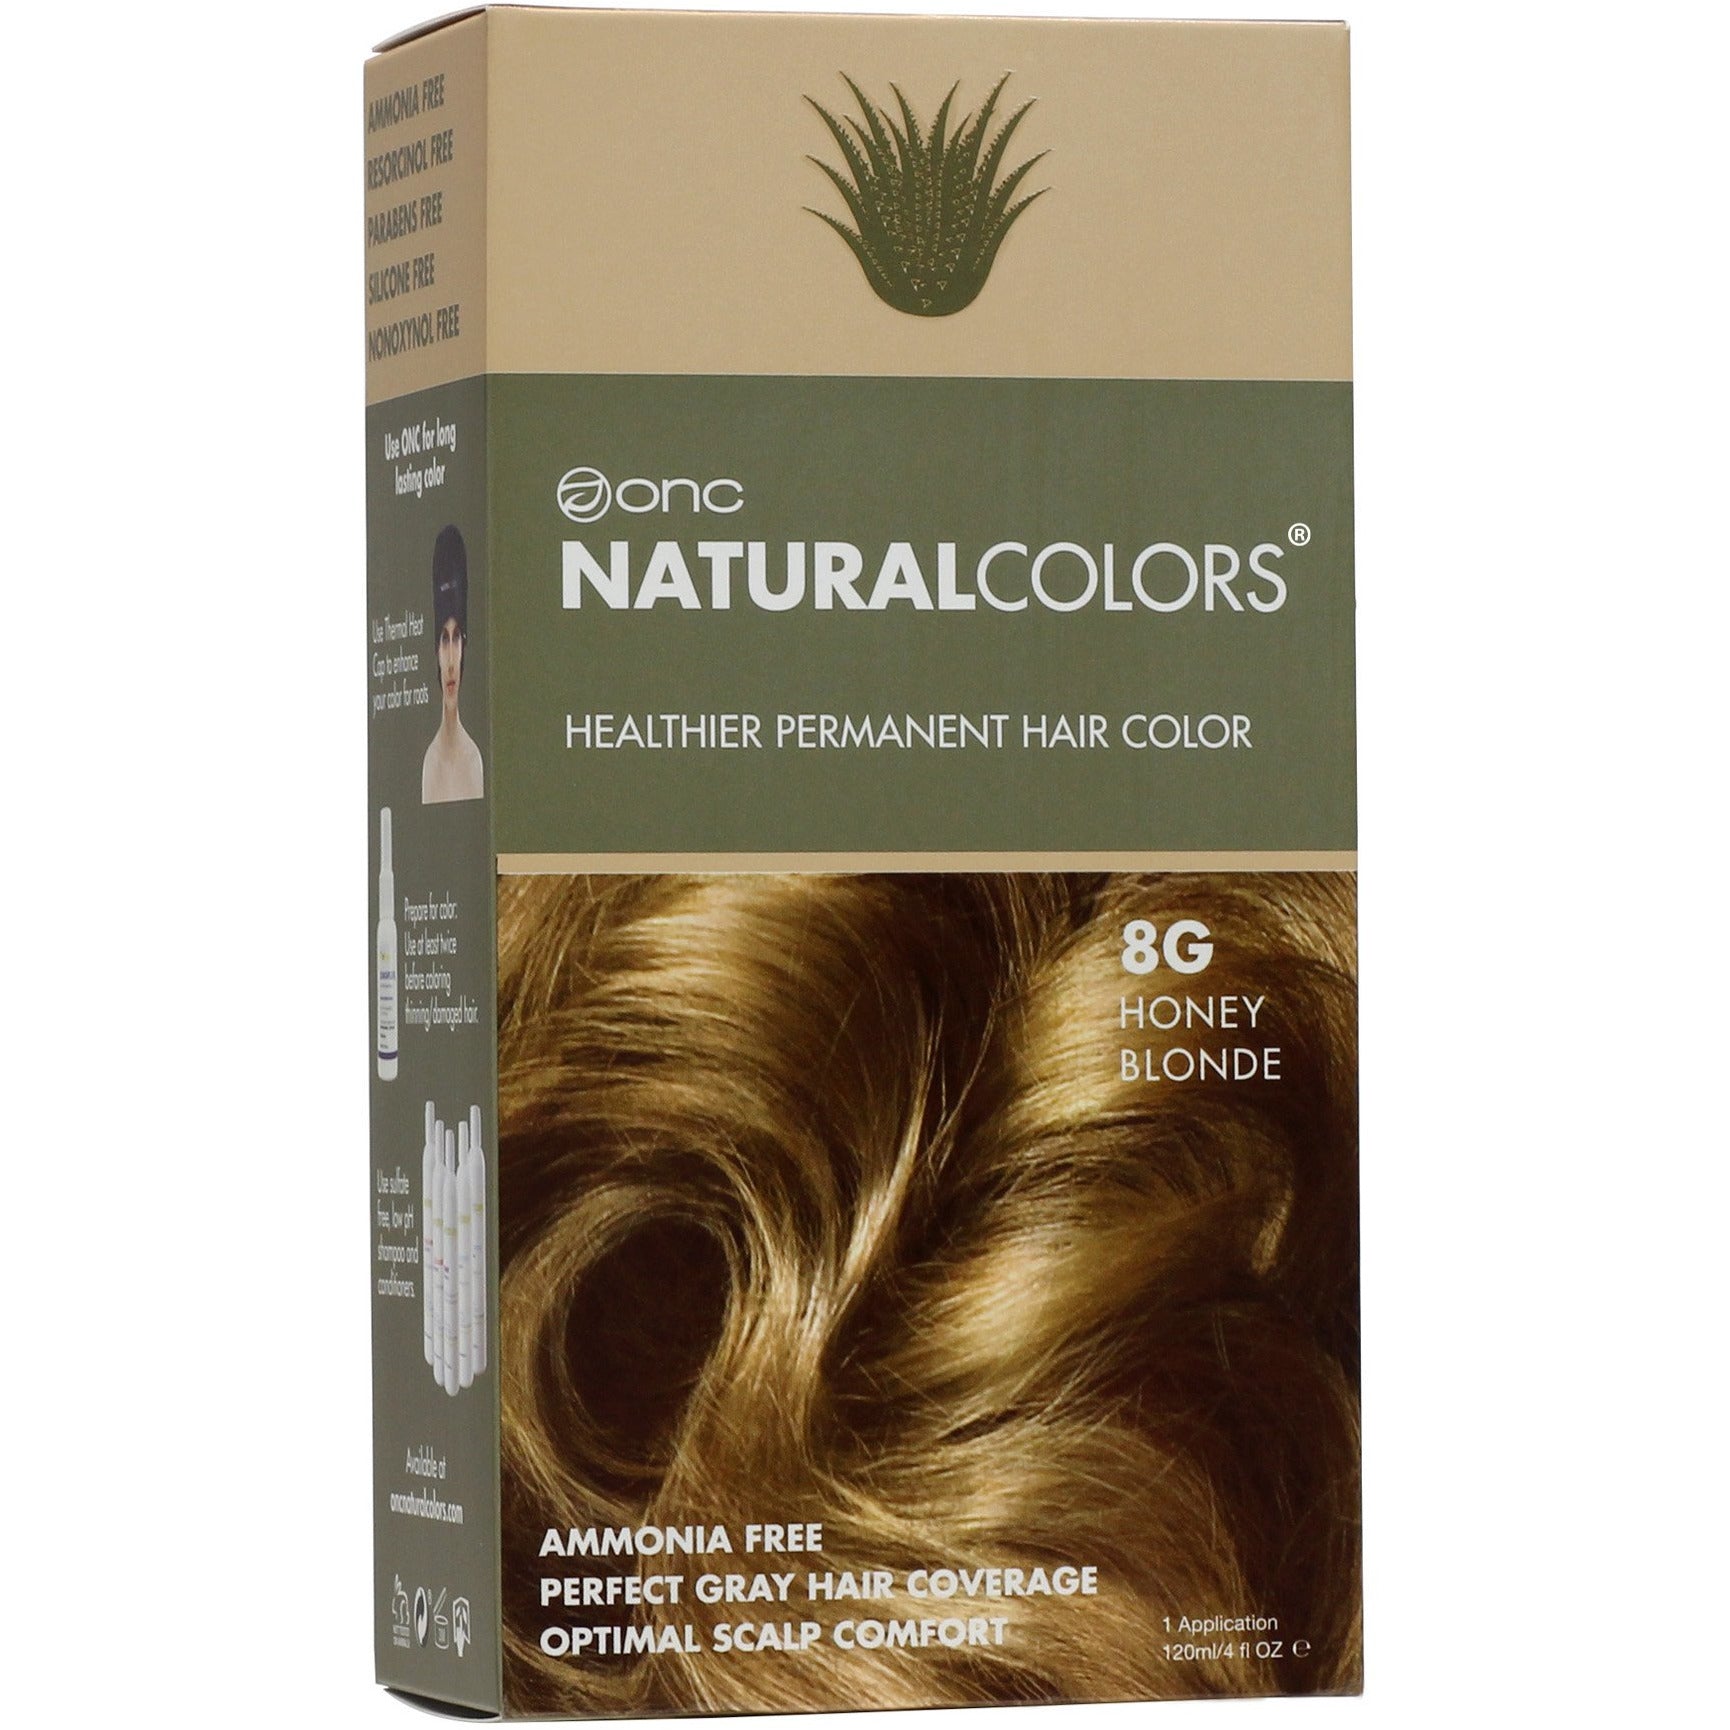 Onc Naturalcolors 8g Honey Blonde Hair Dye Oncnaturalcolors Com